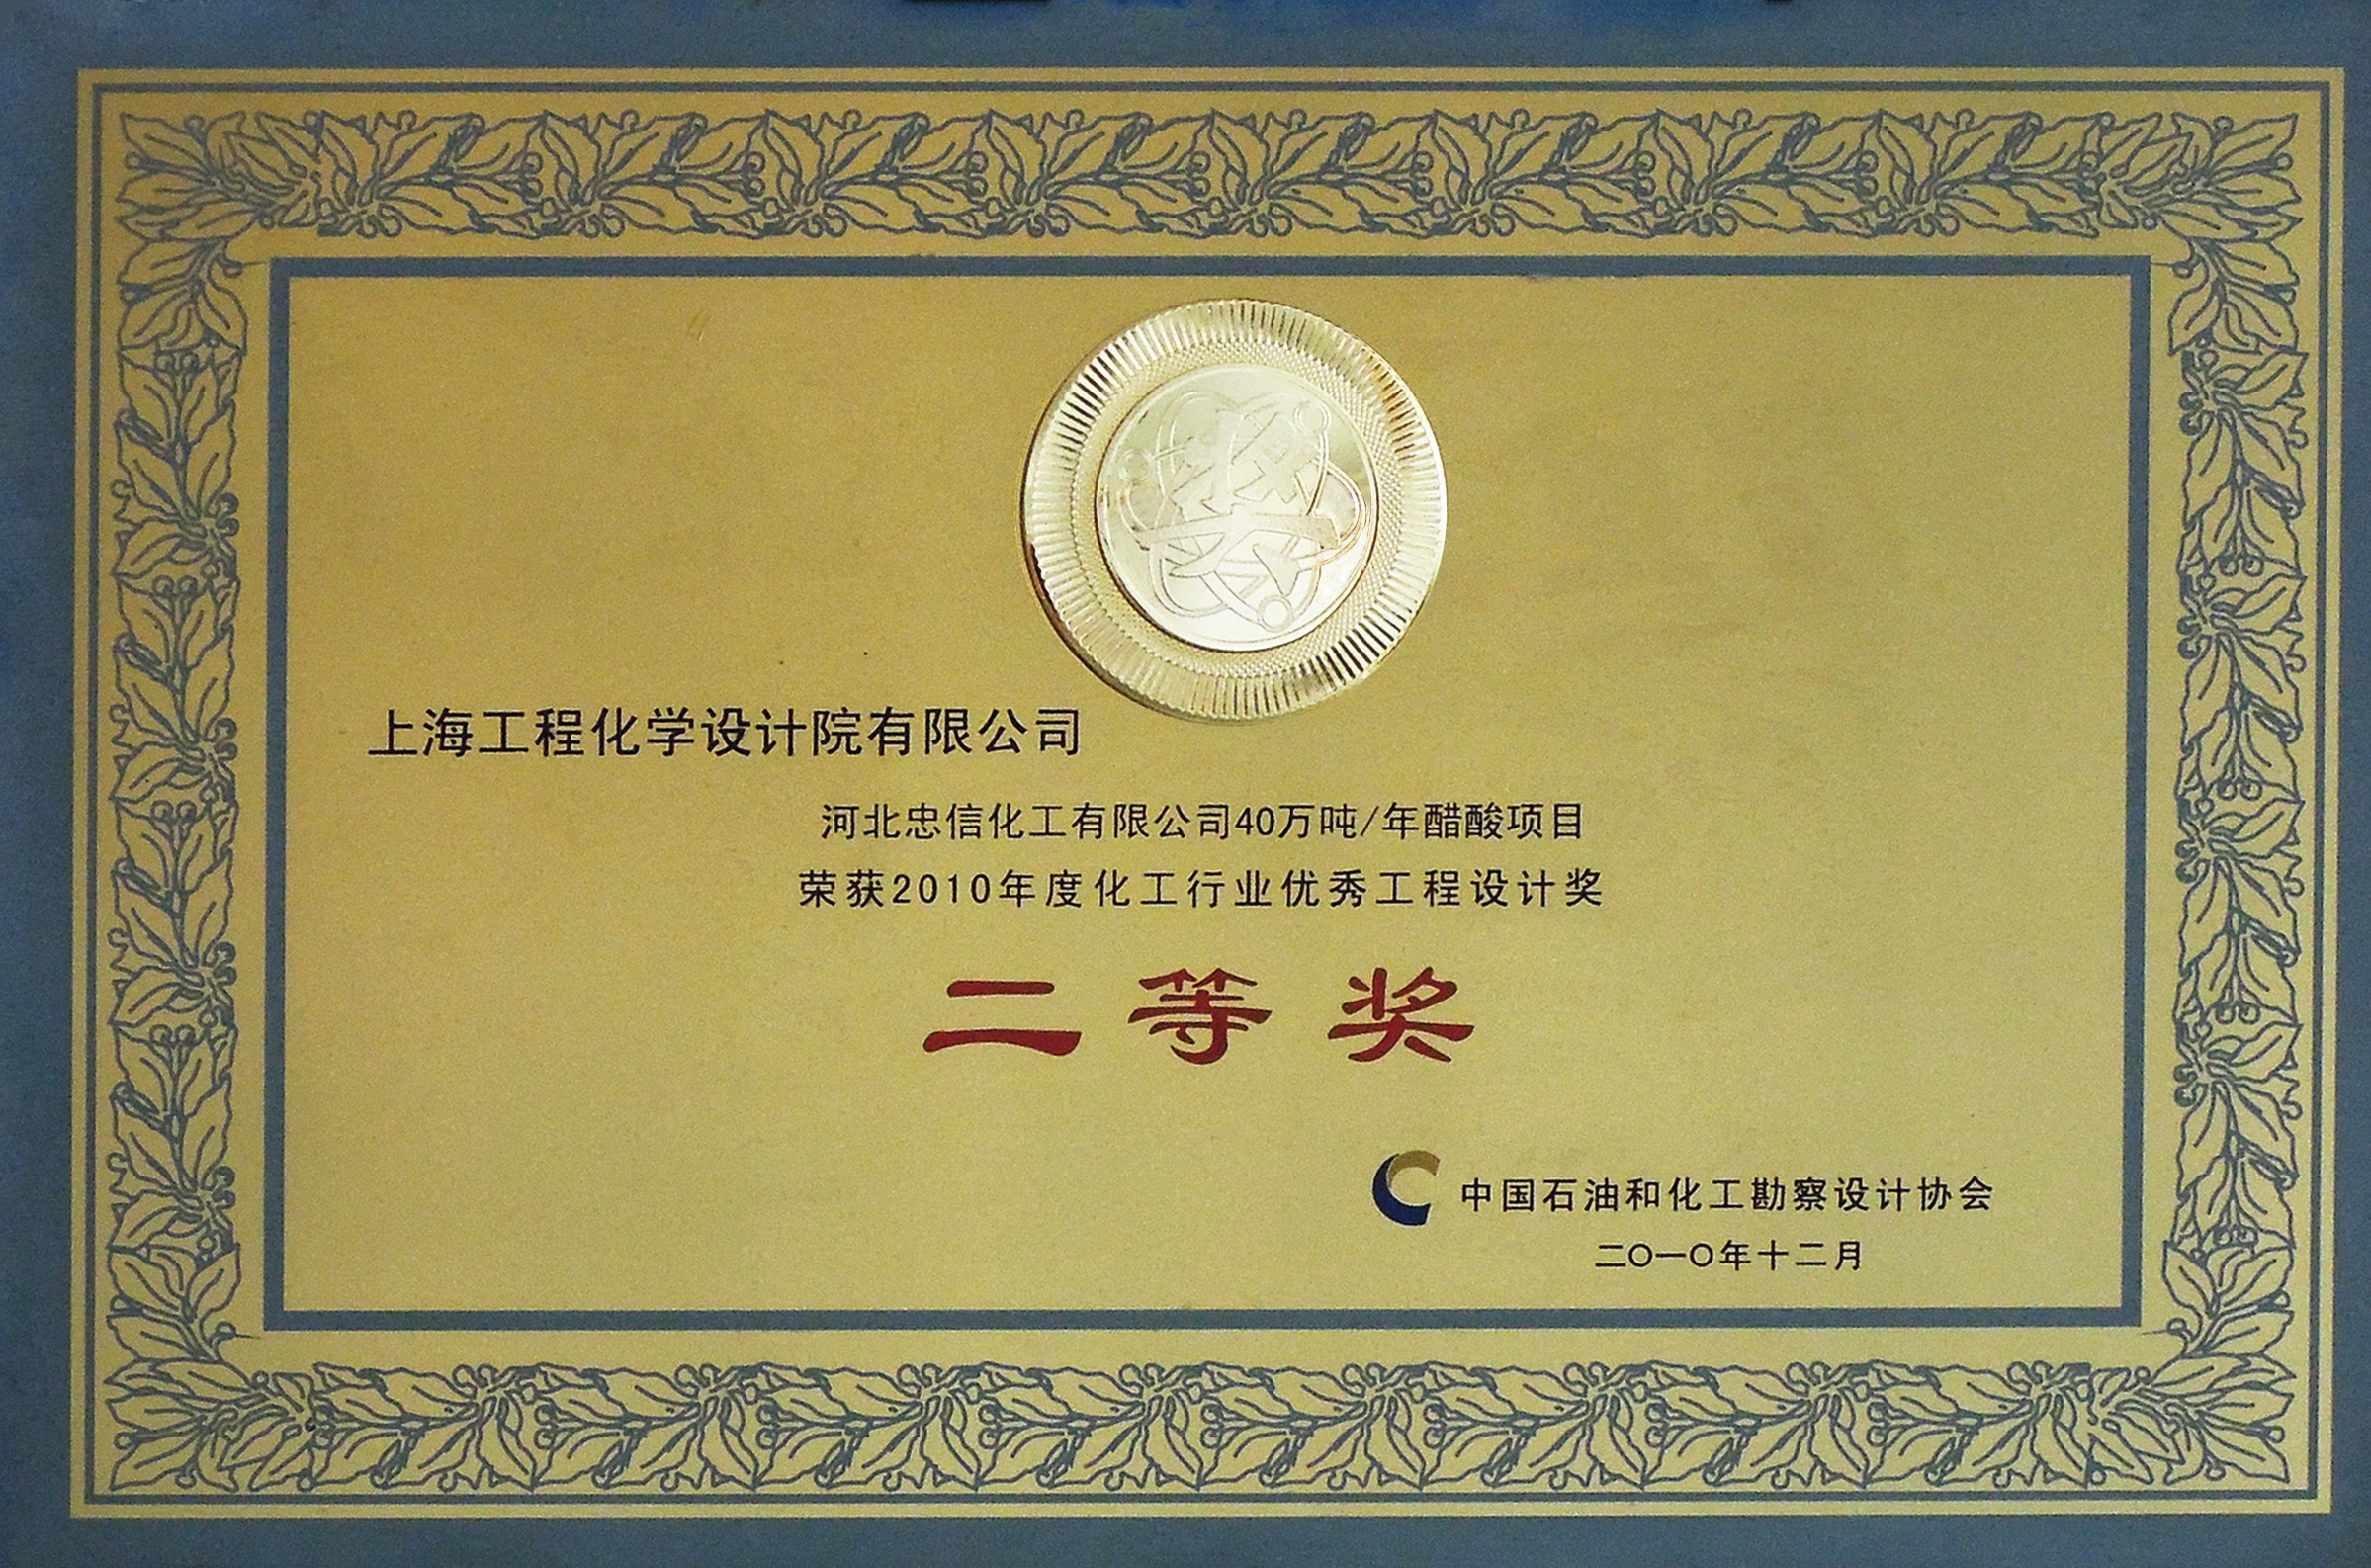 河北忠信化工有限公司40万吨／年醋酸项目，获2010年度化工行业优秀工程设计奖二等奖